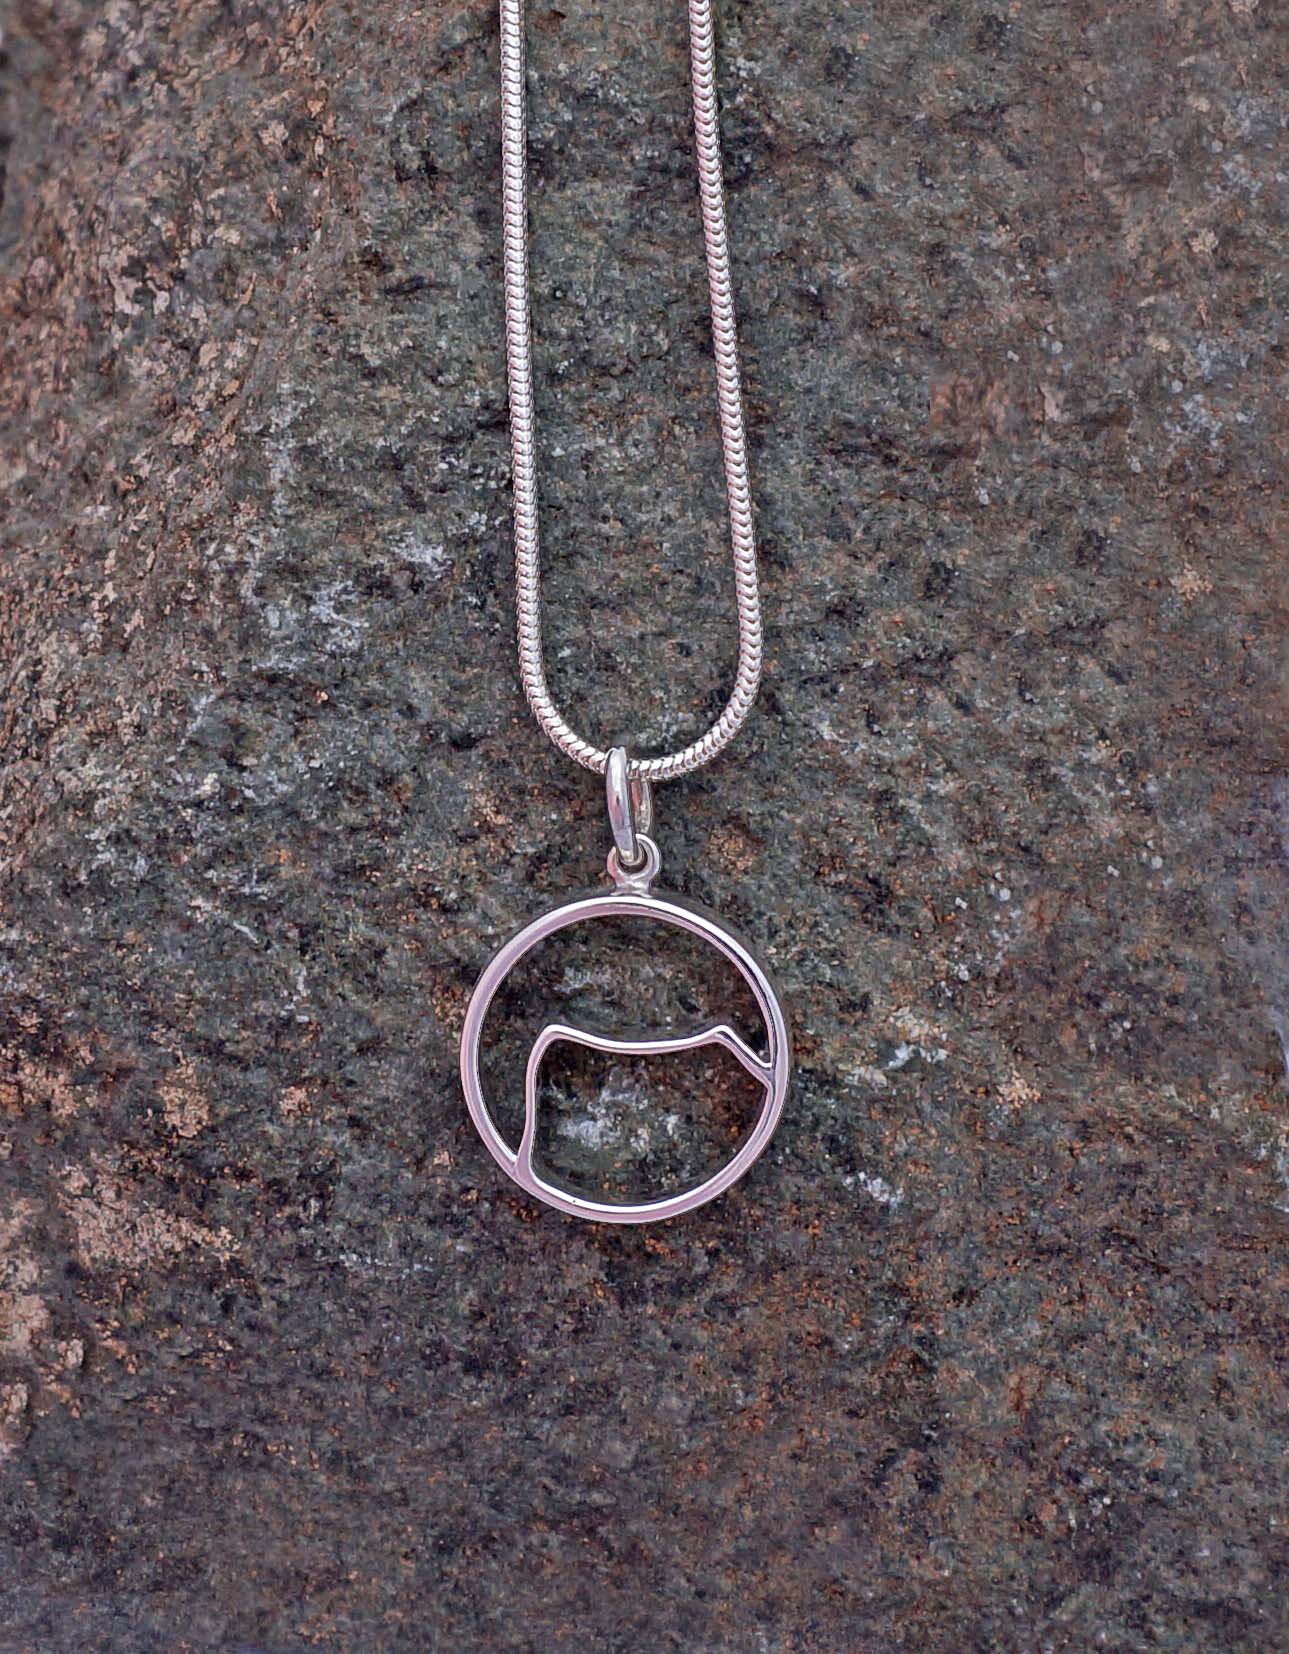 kilimanjaro mountain icon pendant